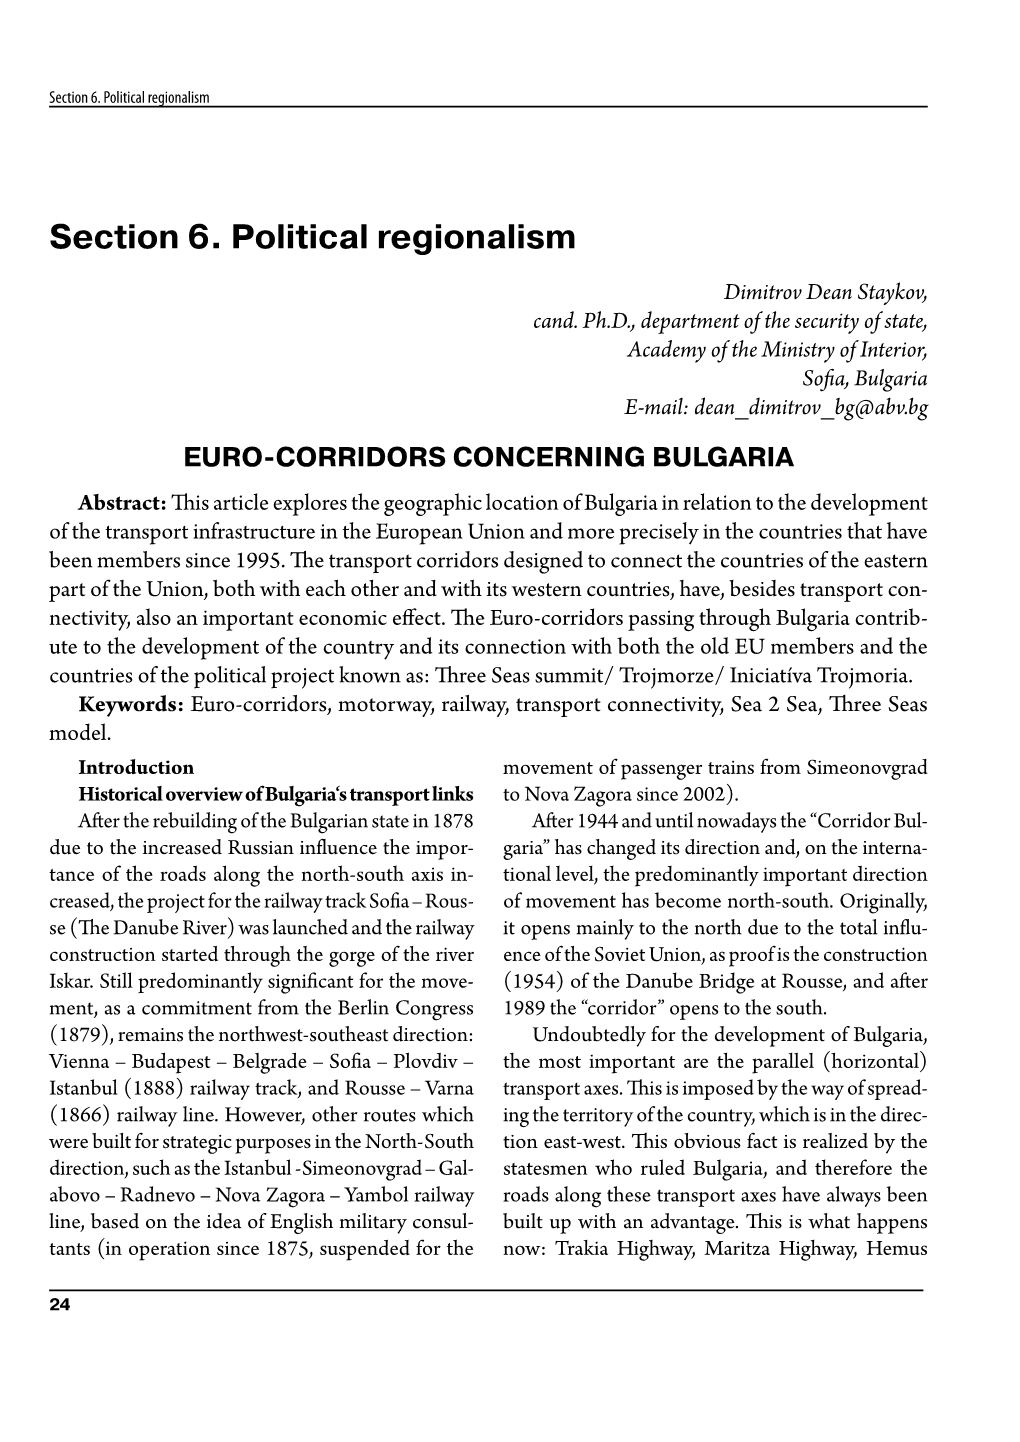 Euro-Corridors Concerning Bulgaria